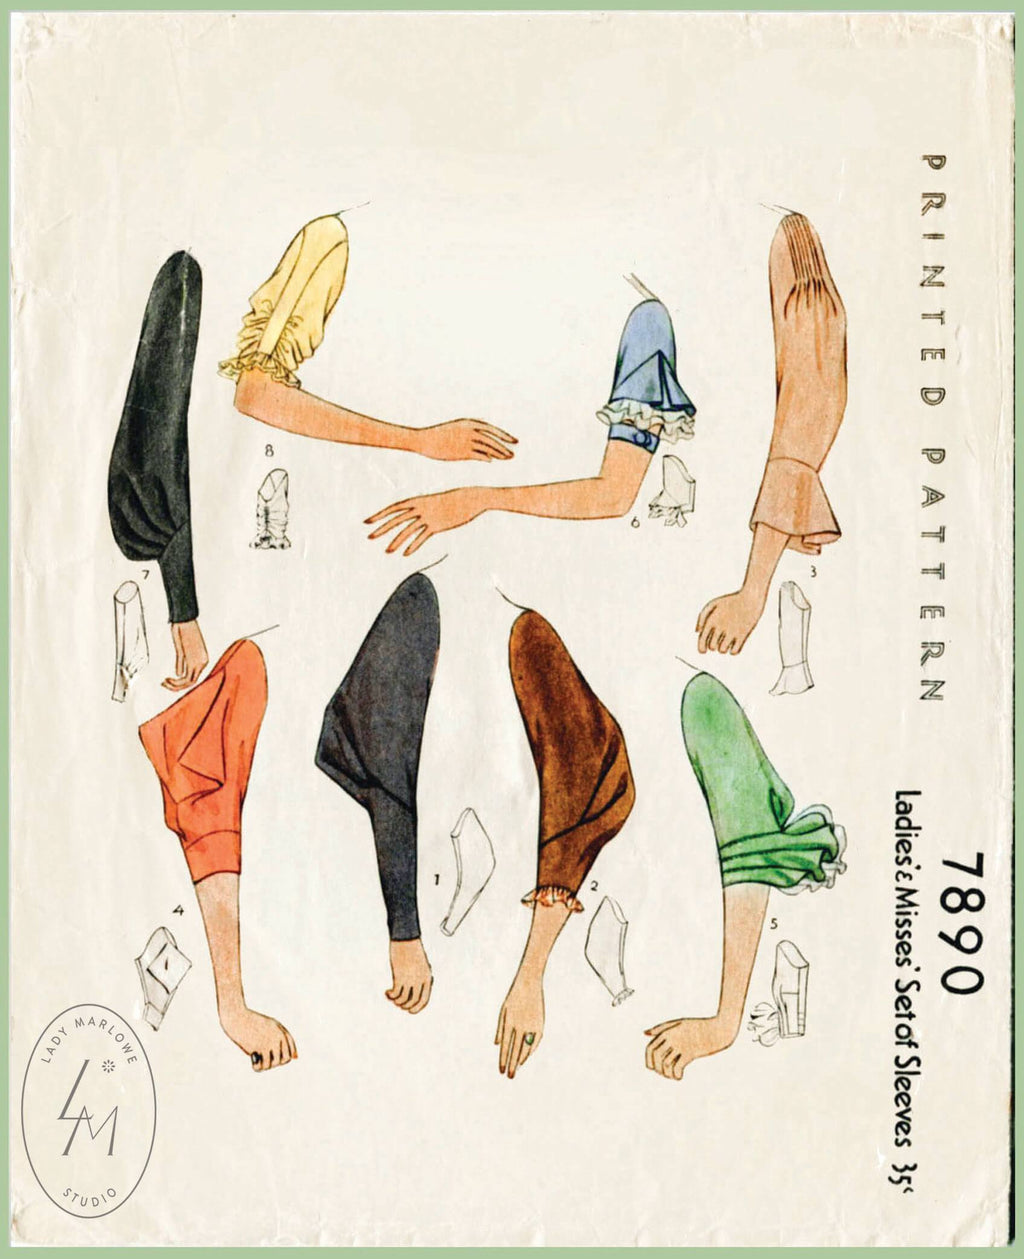 1930 set of sleeves vintage sewing pattern McCall 7890